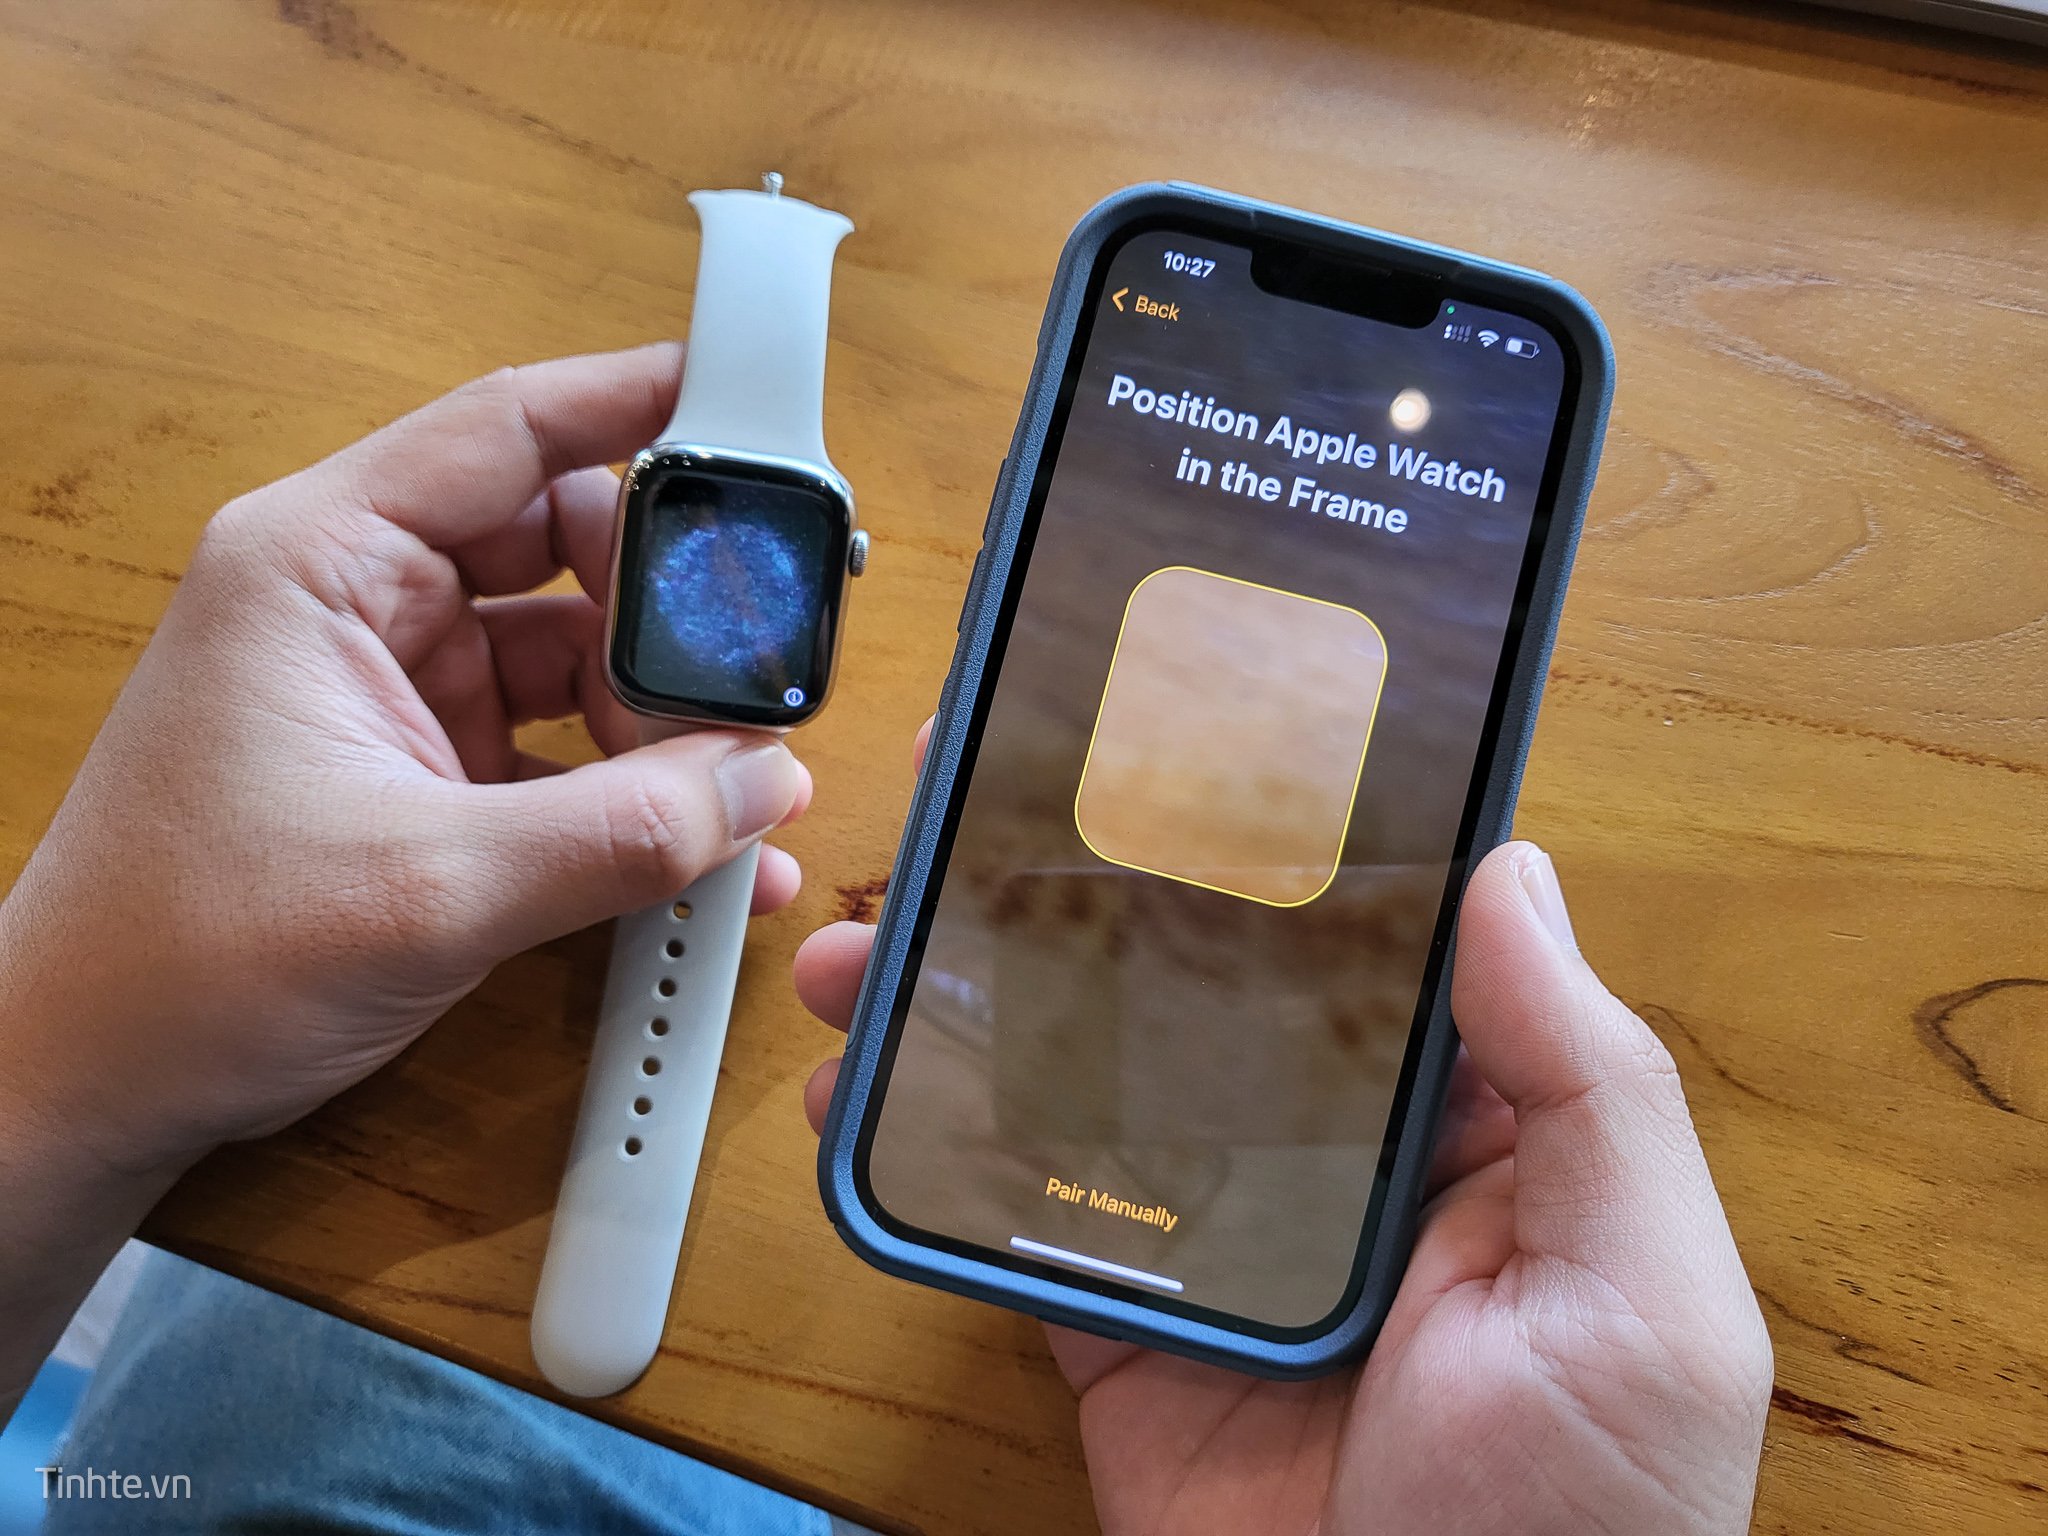 Apple Watch là chiếc đồng hồ thông minh được yêu thích nhất hiện nay. Nếu bạn muốn tìm kiếm những mẫu đồng hồ thông minh mới nhất và đẹp nhất, hãy xem ngay hình ảnh liên quan đến từ khóa này để khám phá những tính năng tiện ích và thiết kế đa dạng của Apple Watch.